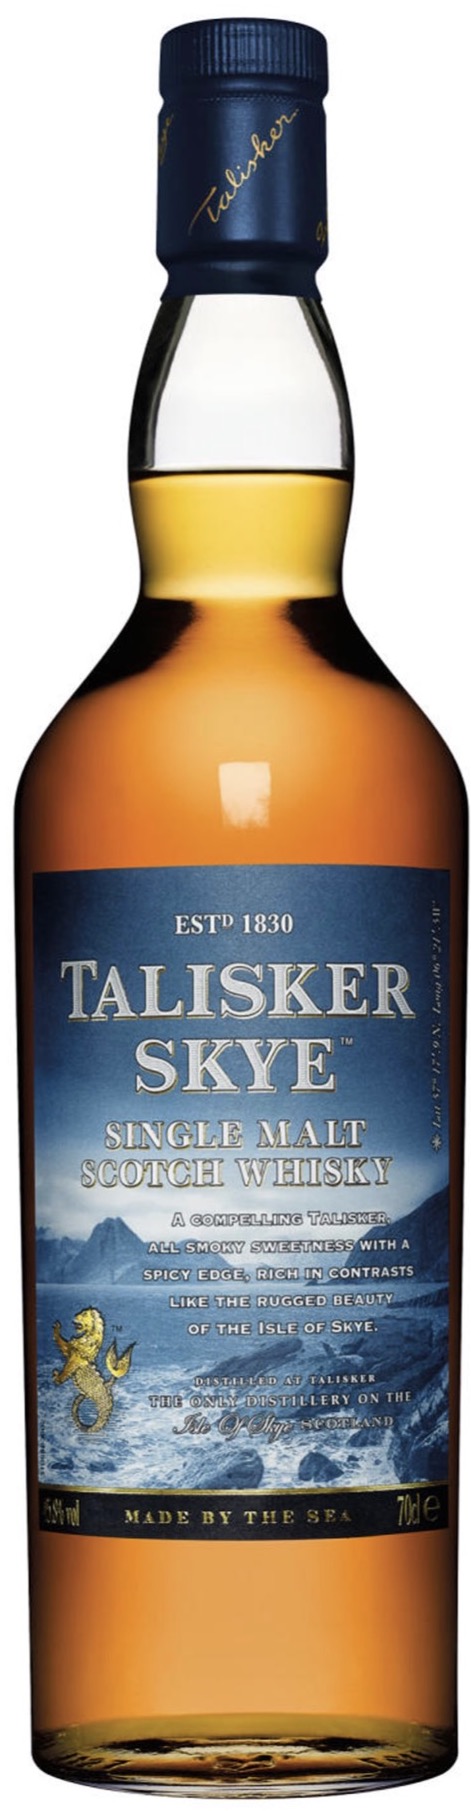 Talisker Skye Single Malt Scotch Whisky GP 45,8% vol.  0,7L